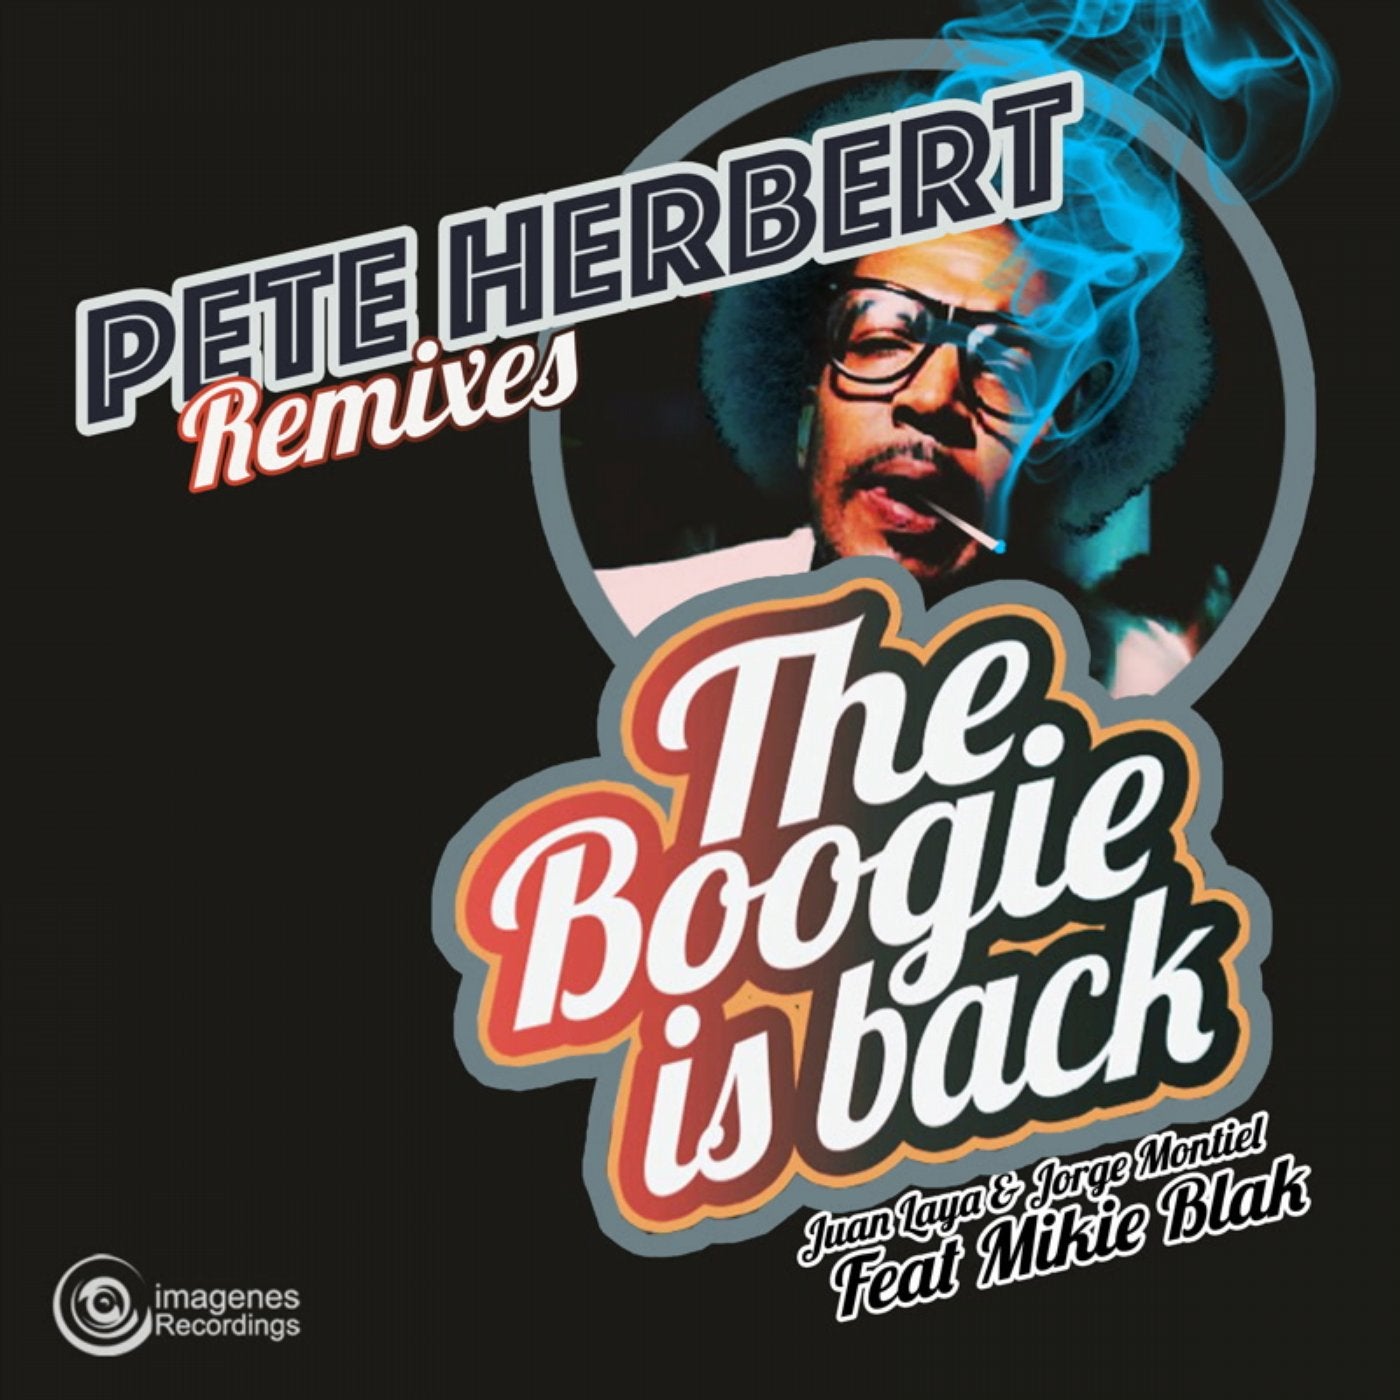 The Boogie Is Back - Pete Herbert Remixes